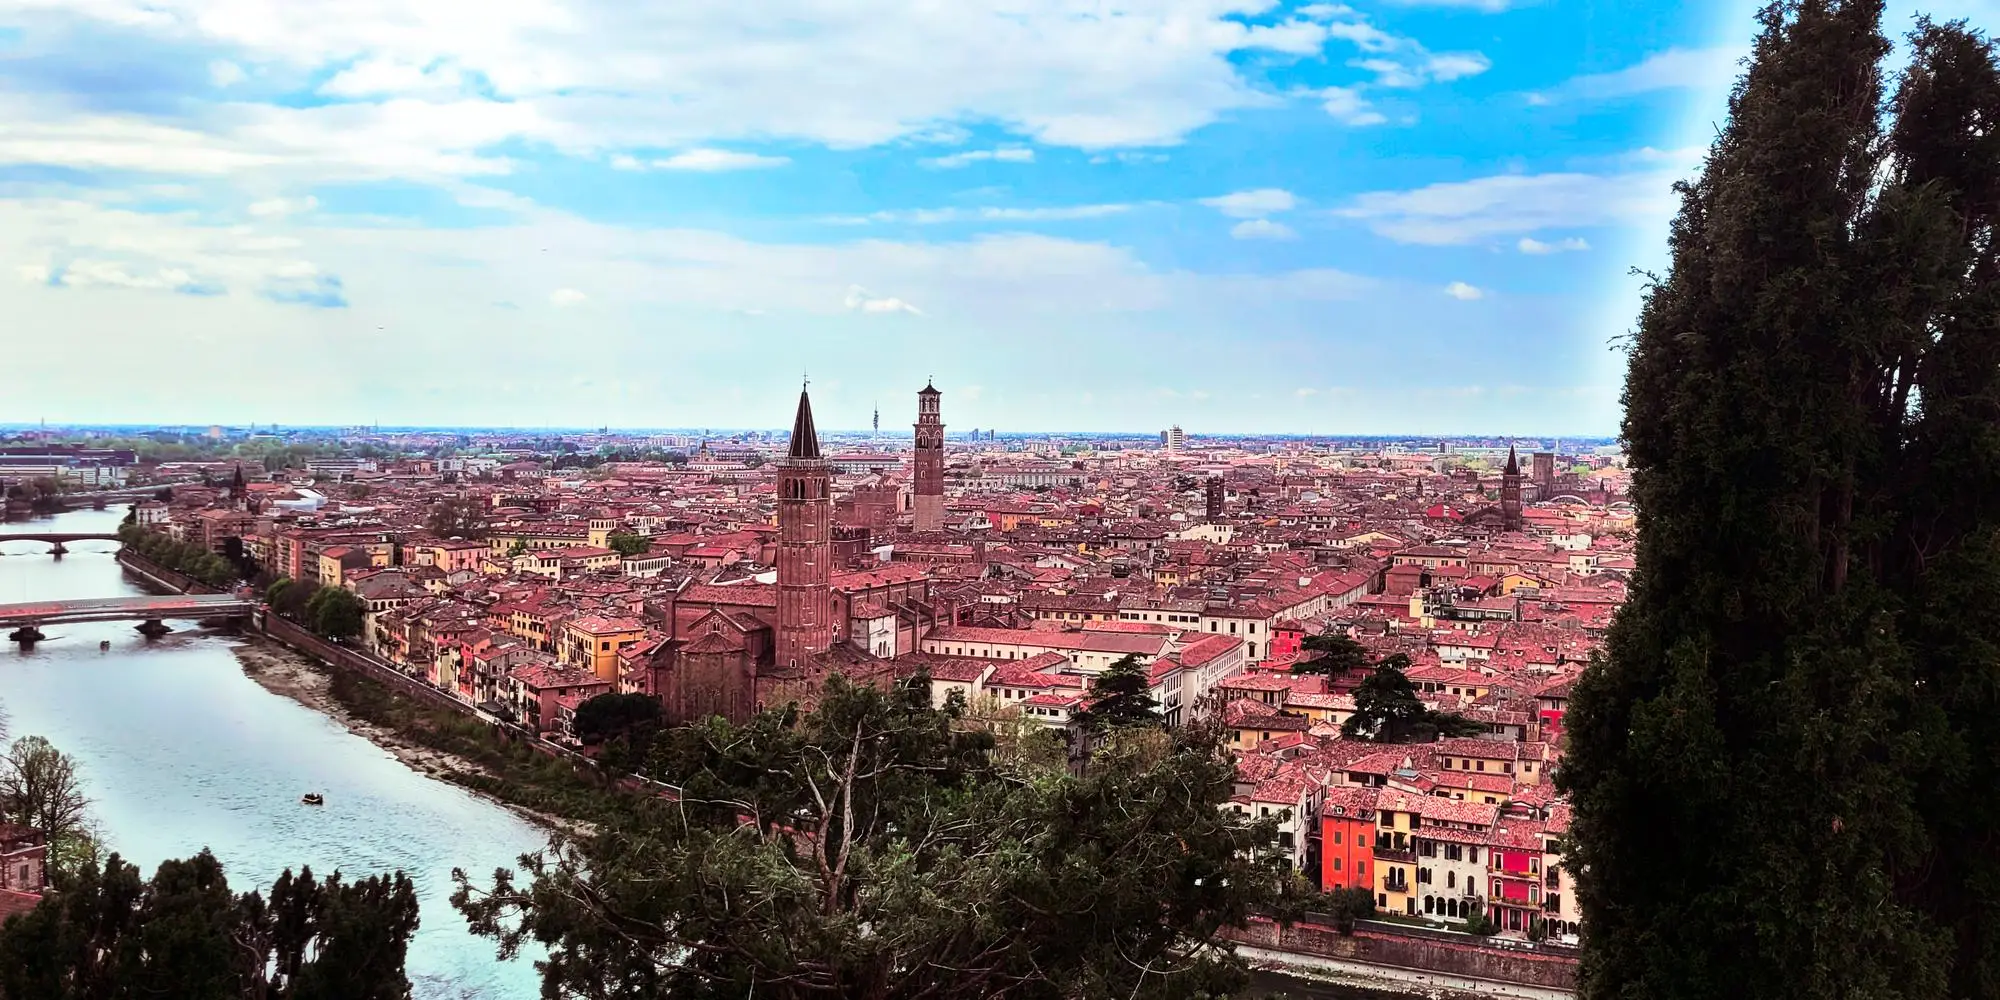 Visitare Verona - Vista da Castel San Pietro sull'Adige e sui tetti rossi di Verona - Visiting Verona